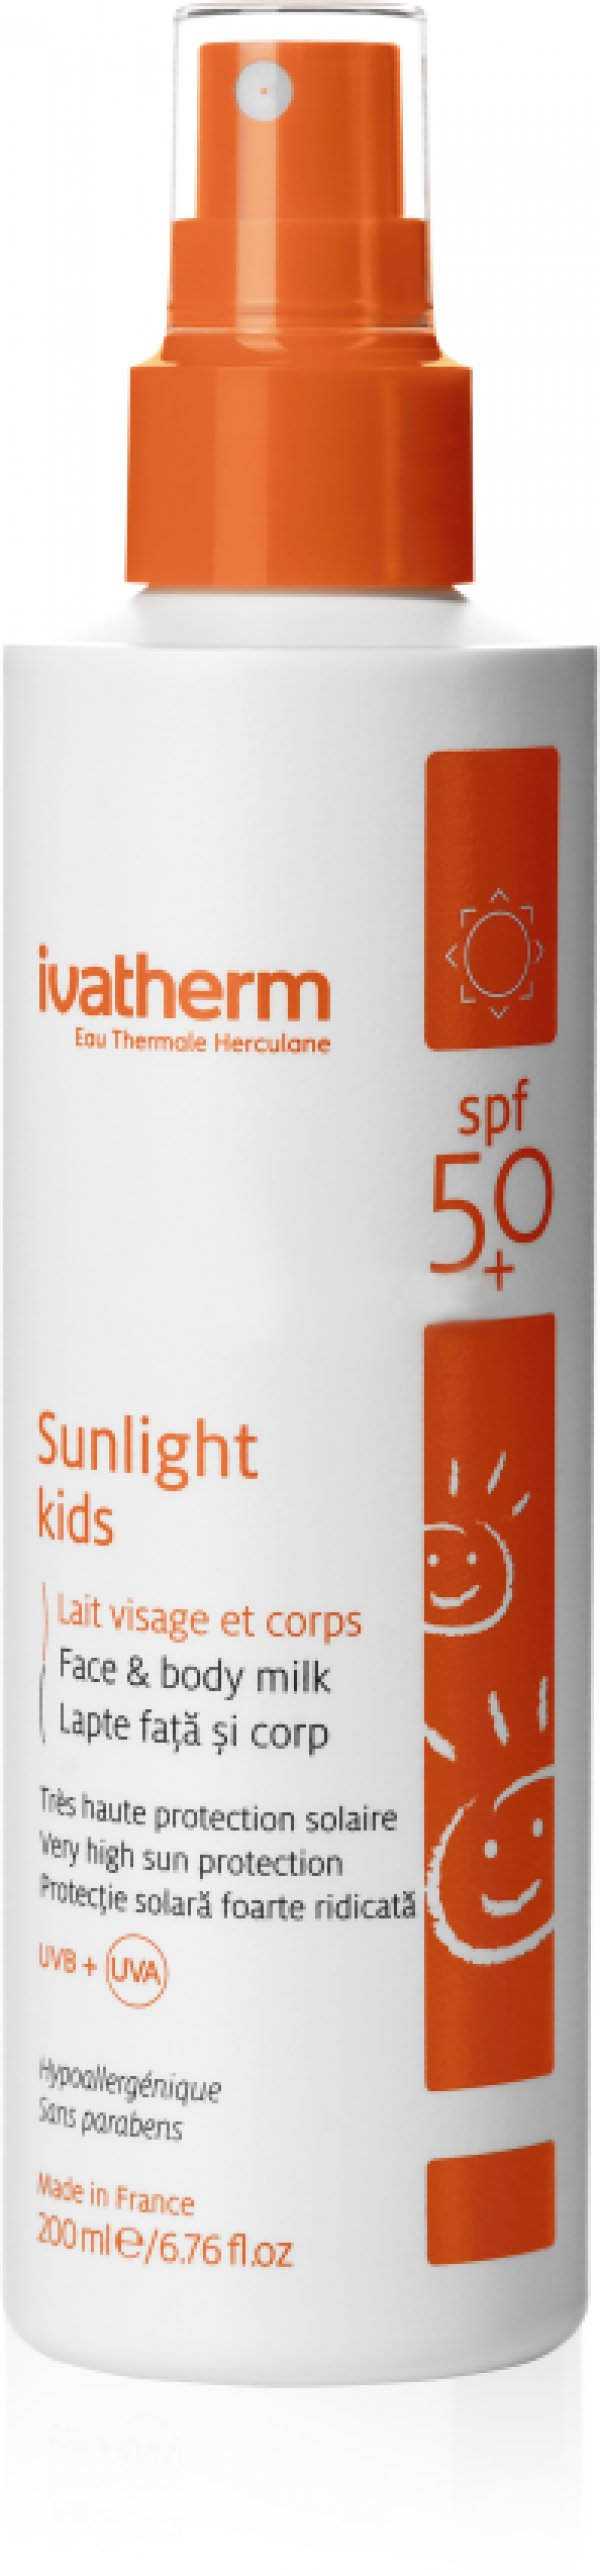 إيفاثيرم واقي شمس للأطفال حماية فائقة spf 50 وحليب للجسم 200 مل - Sidalih.com || صيدلية.كوم